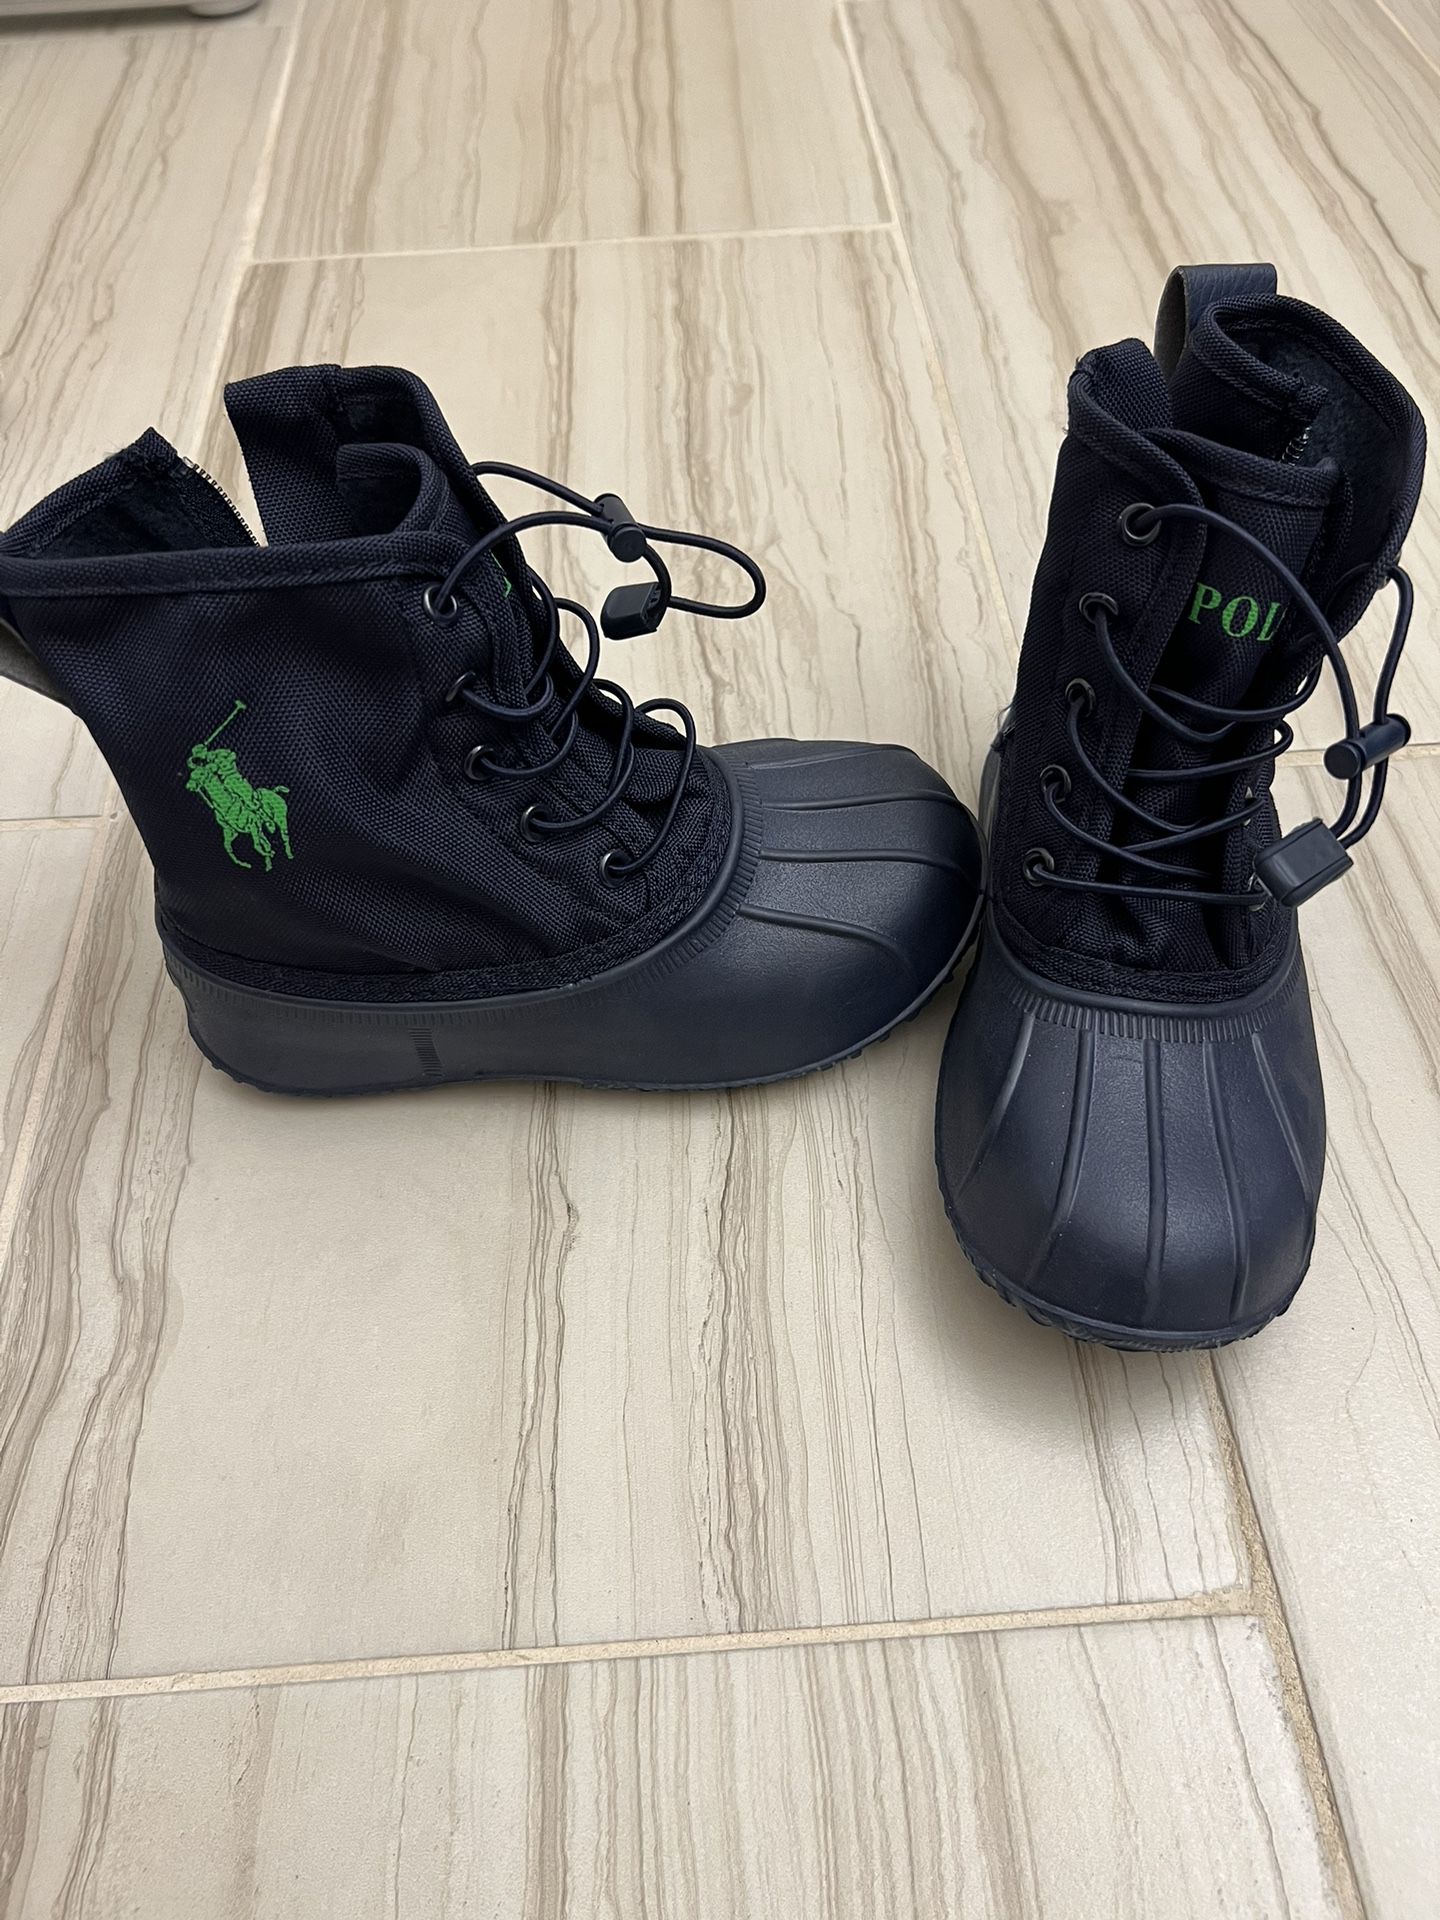 Rain Boots/shoes